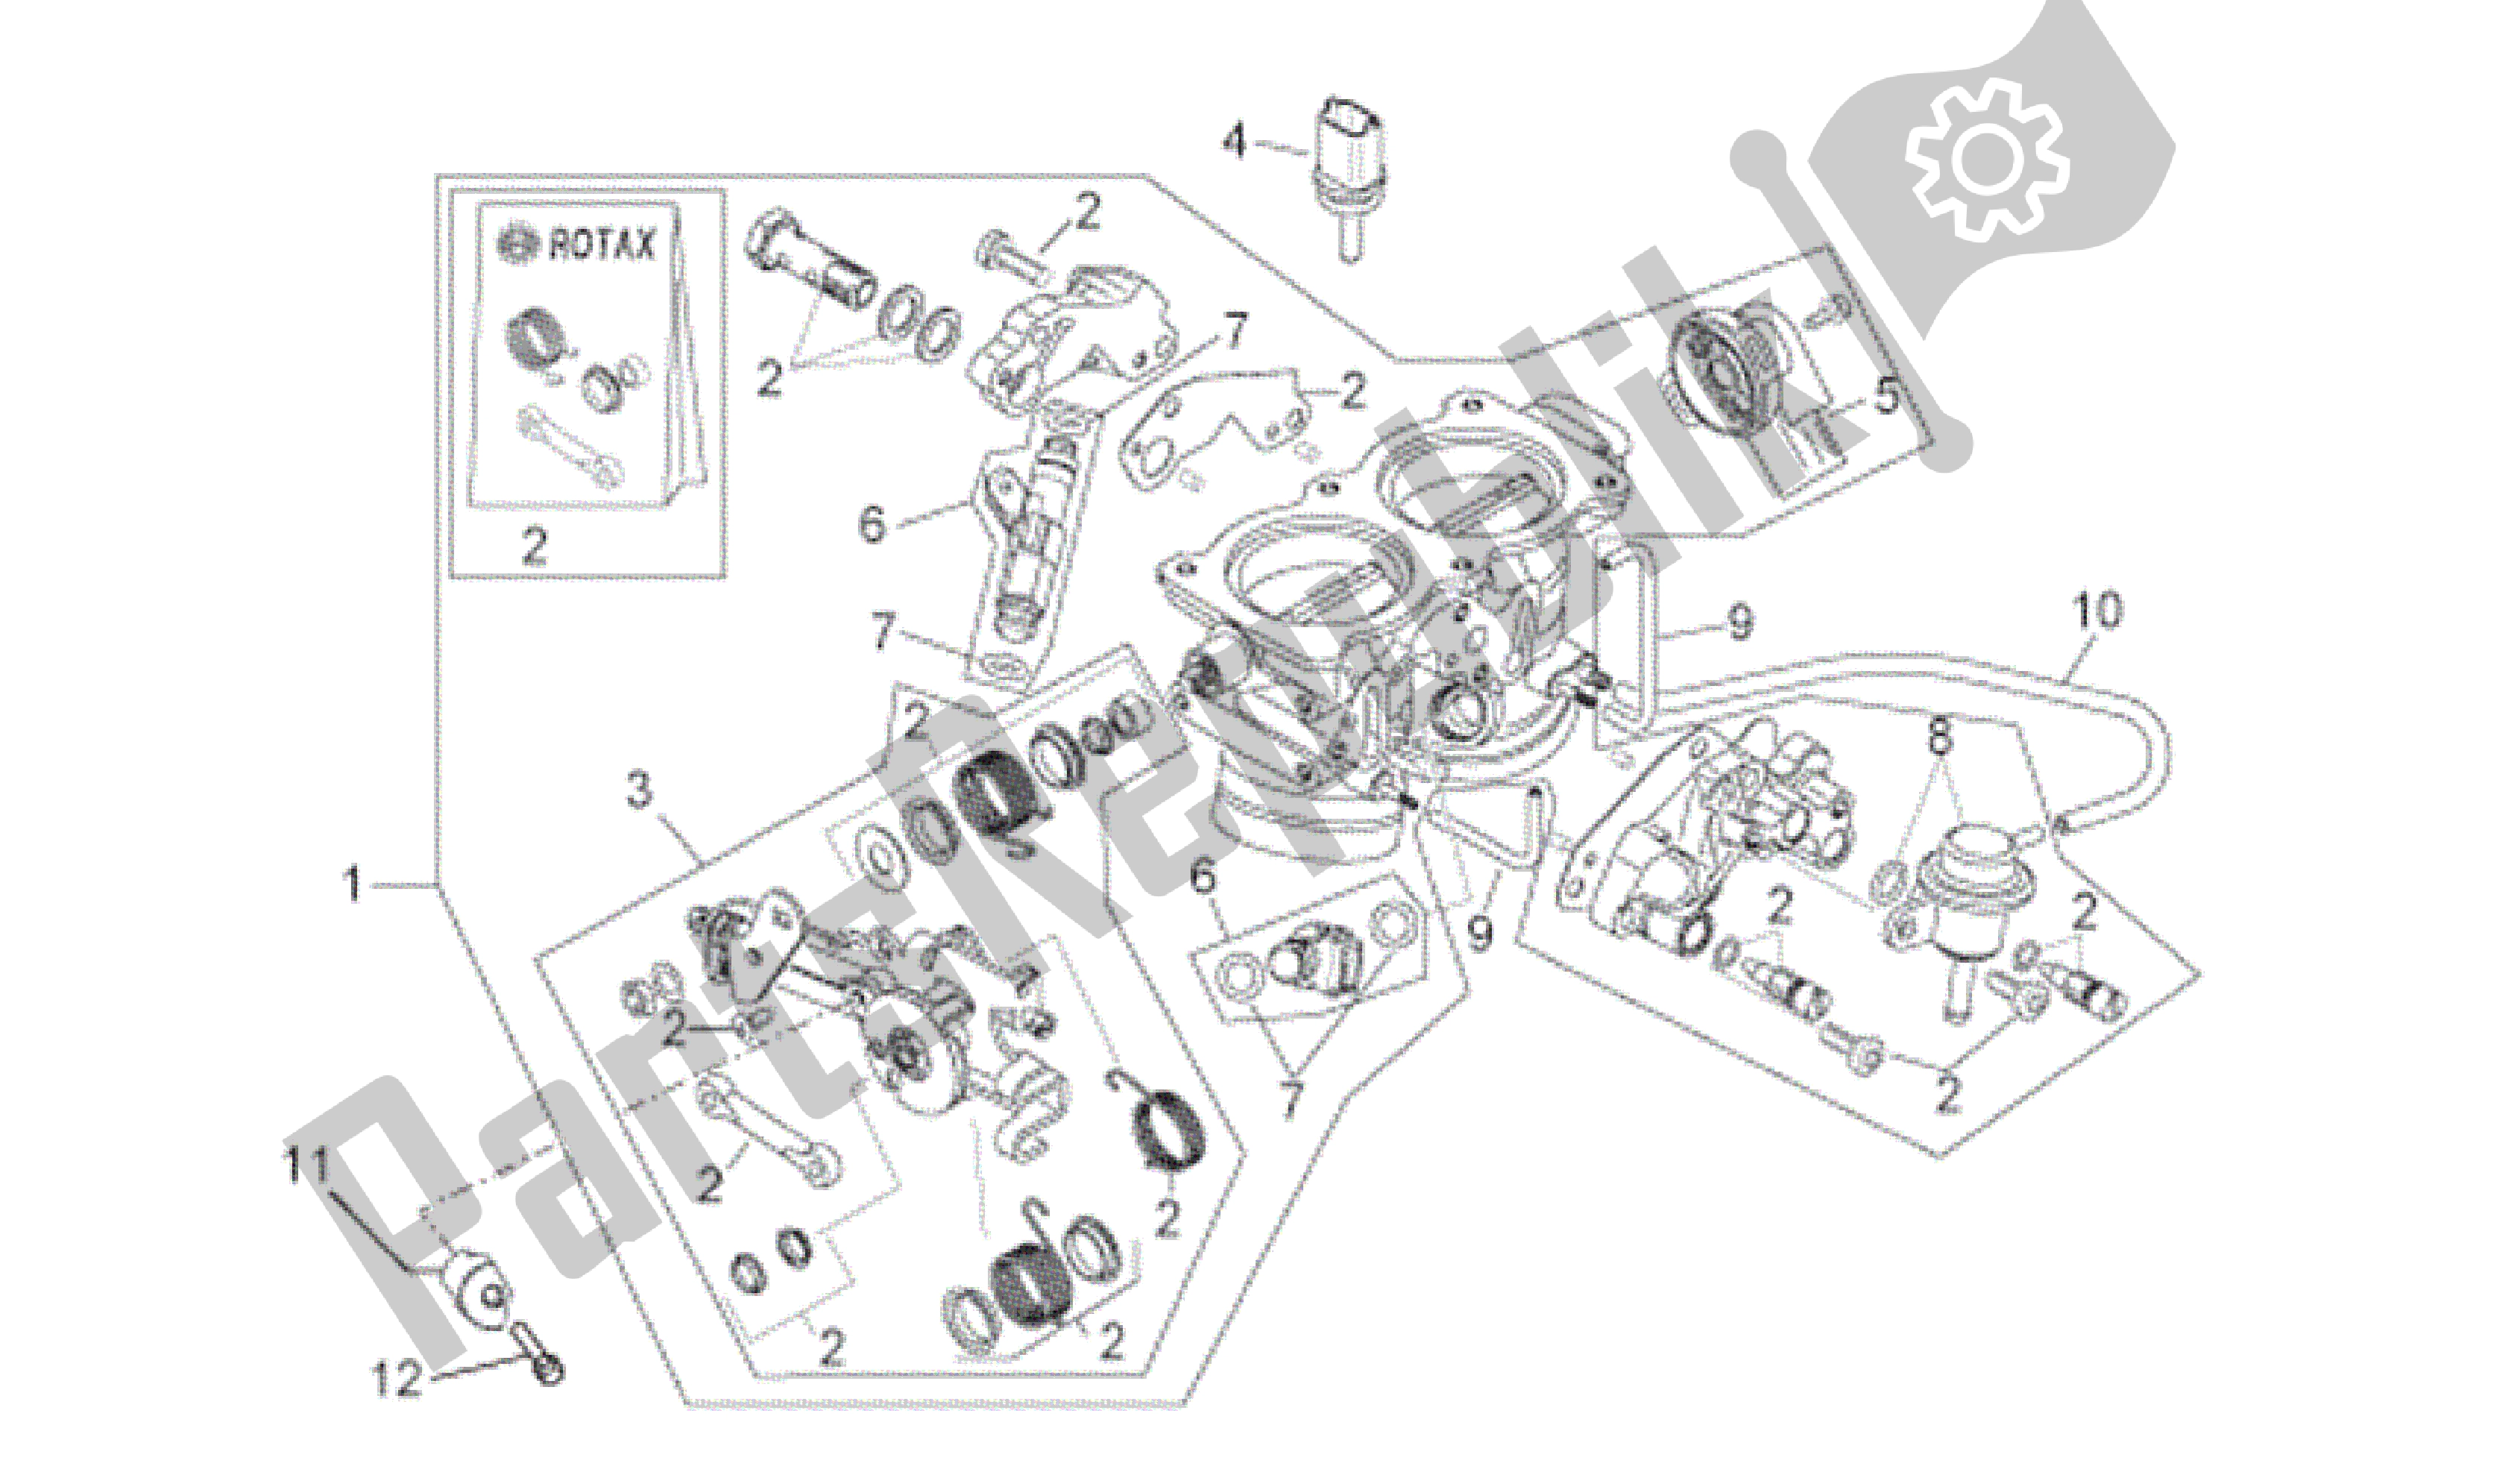 All parts for the Throttle Body of the Aprilia RSV Tuono R 3985 1000 2006 - 2009